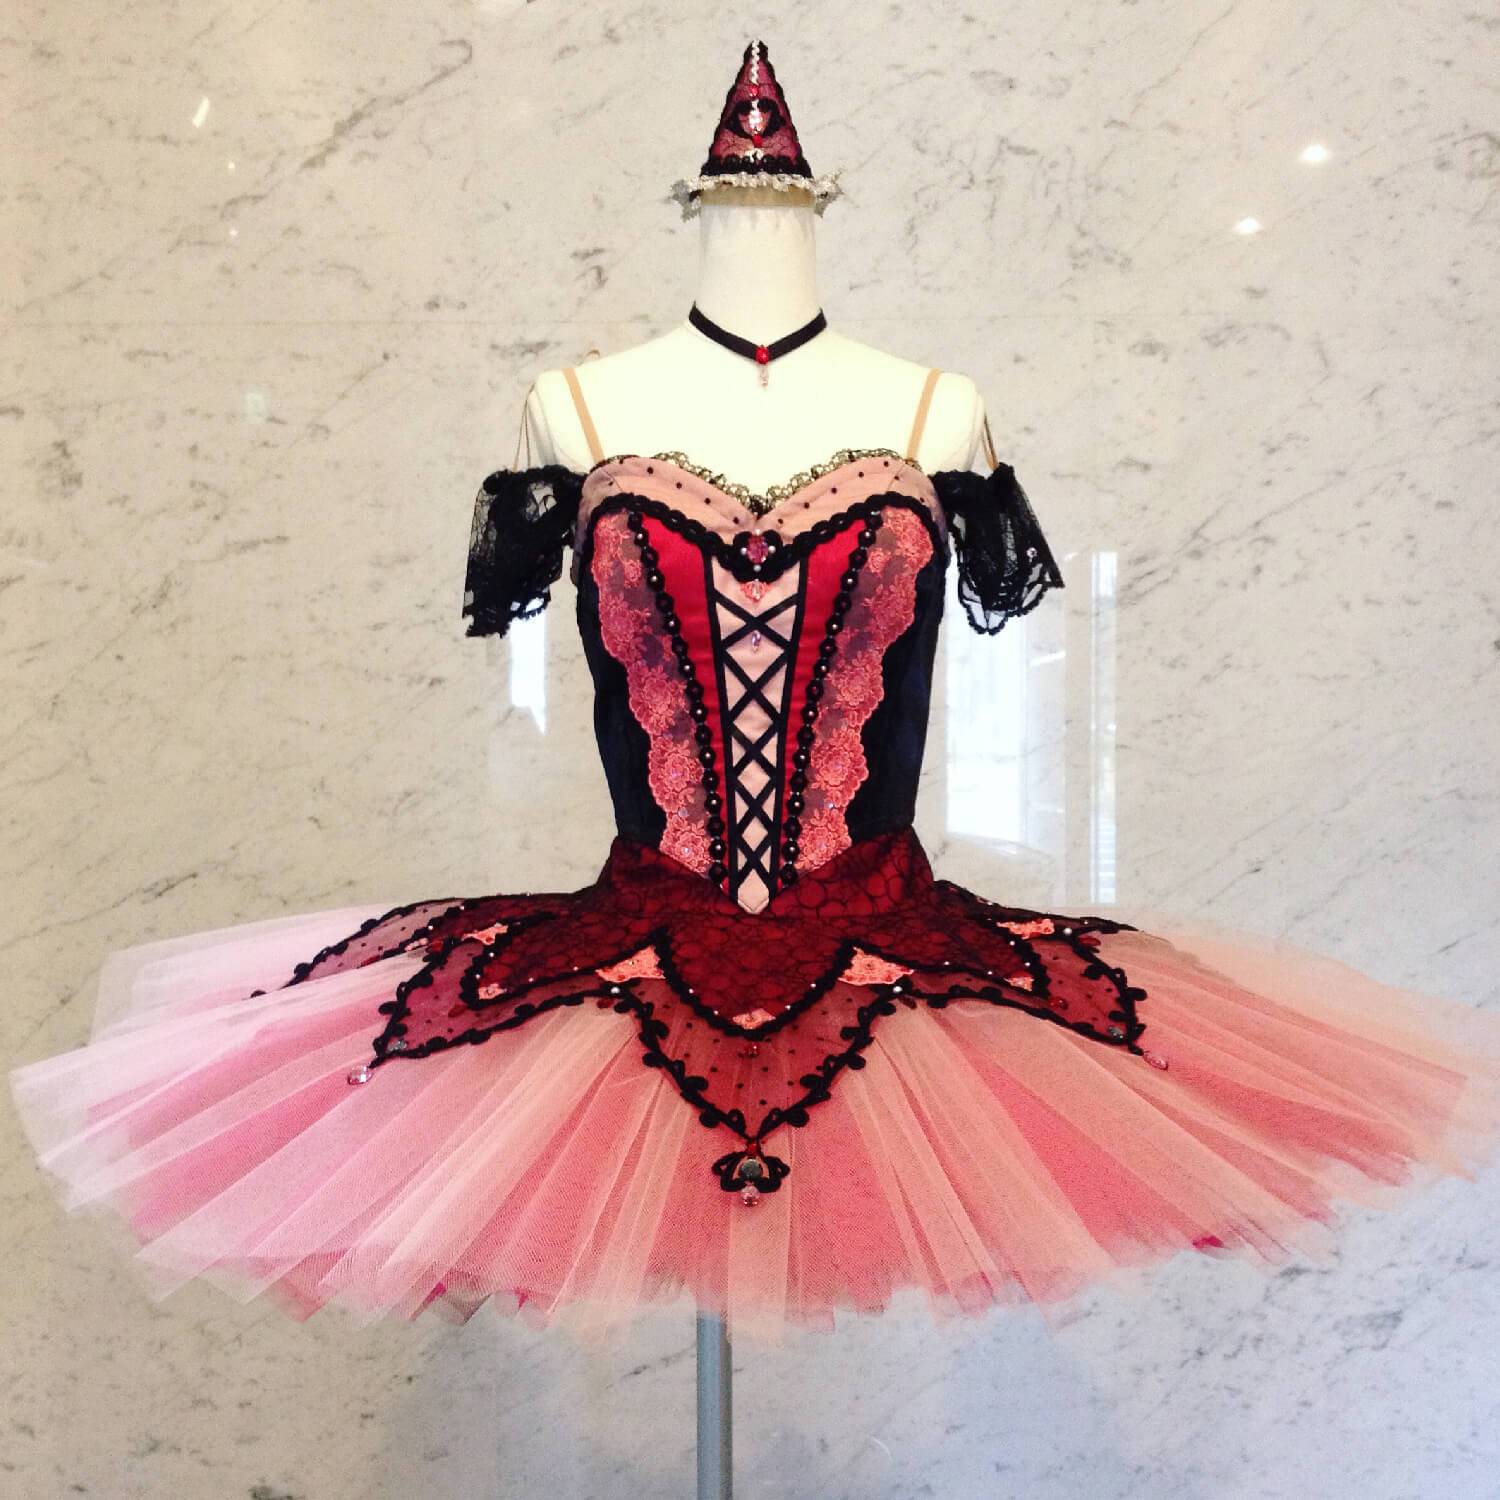 バレエのオーダーメイド衣装製作なら【Jardin des Costumes】 | バレエ 